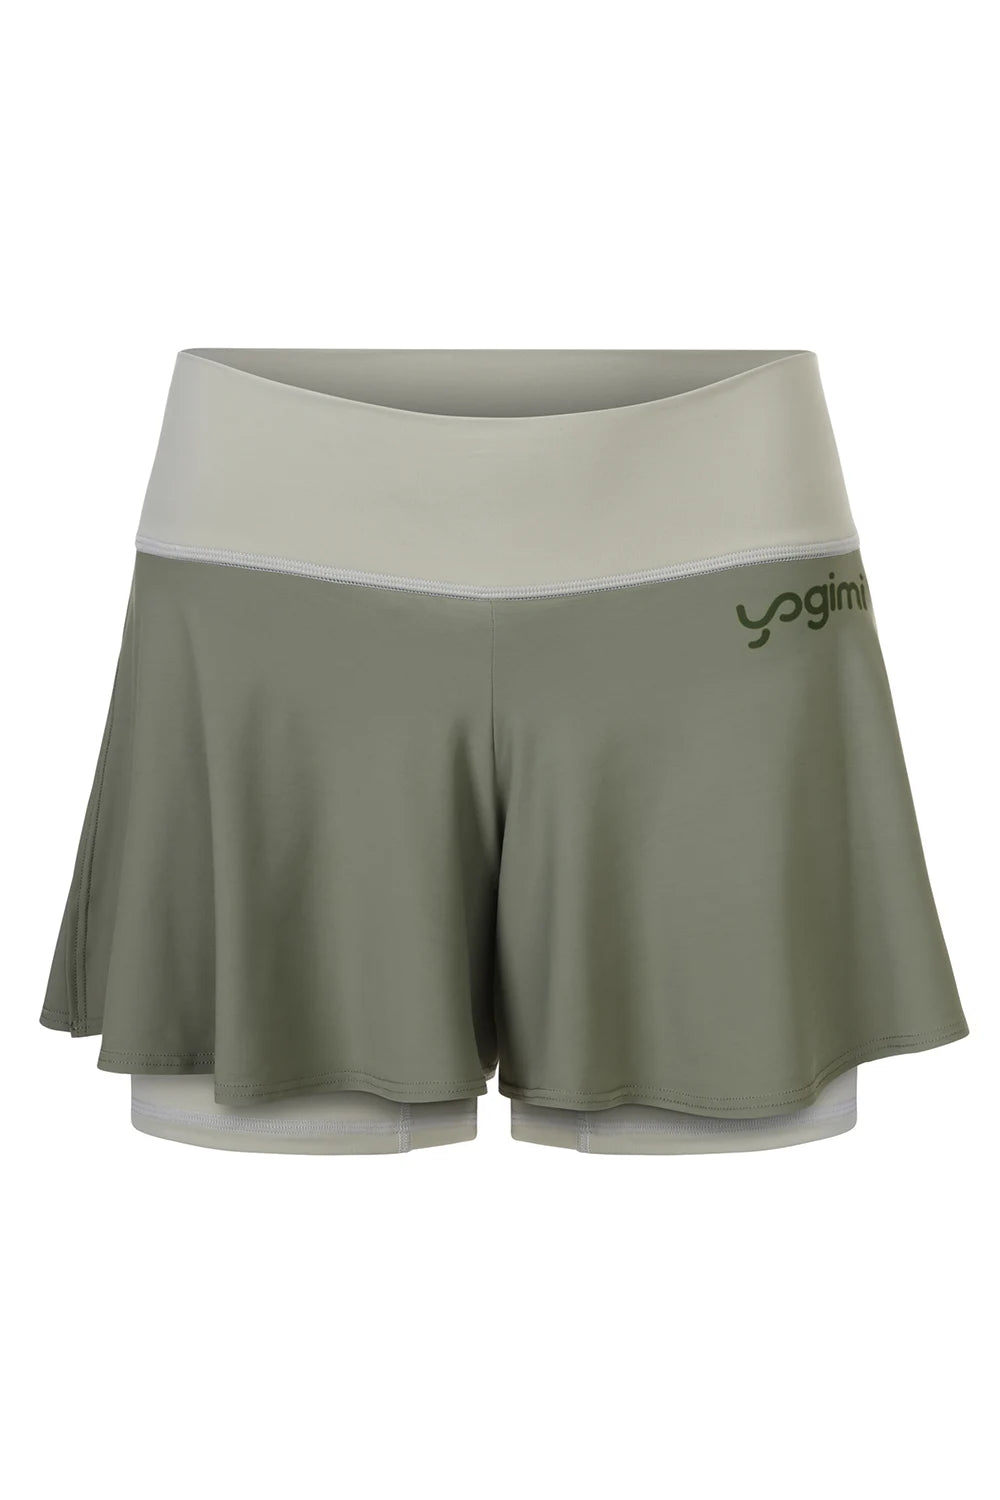 Silueta de pantalones cortos de yoga de Yogimi en color verde con capa verde. Modelo Prana Laurel Green-Green